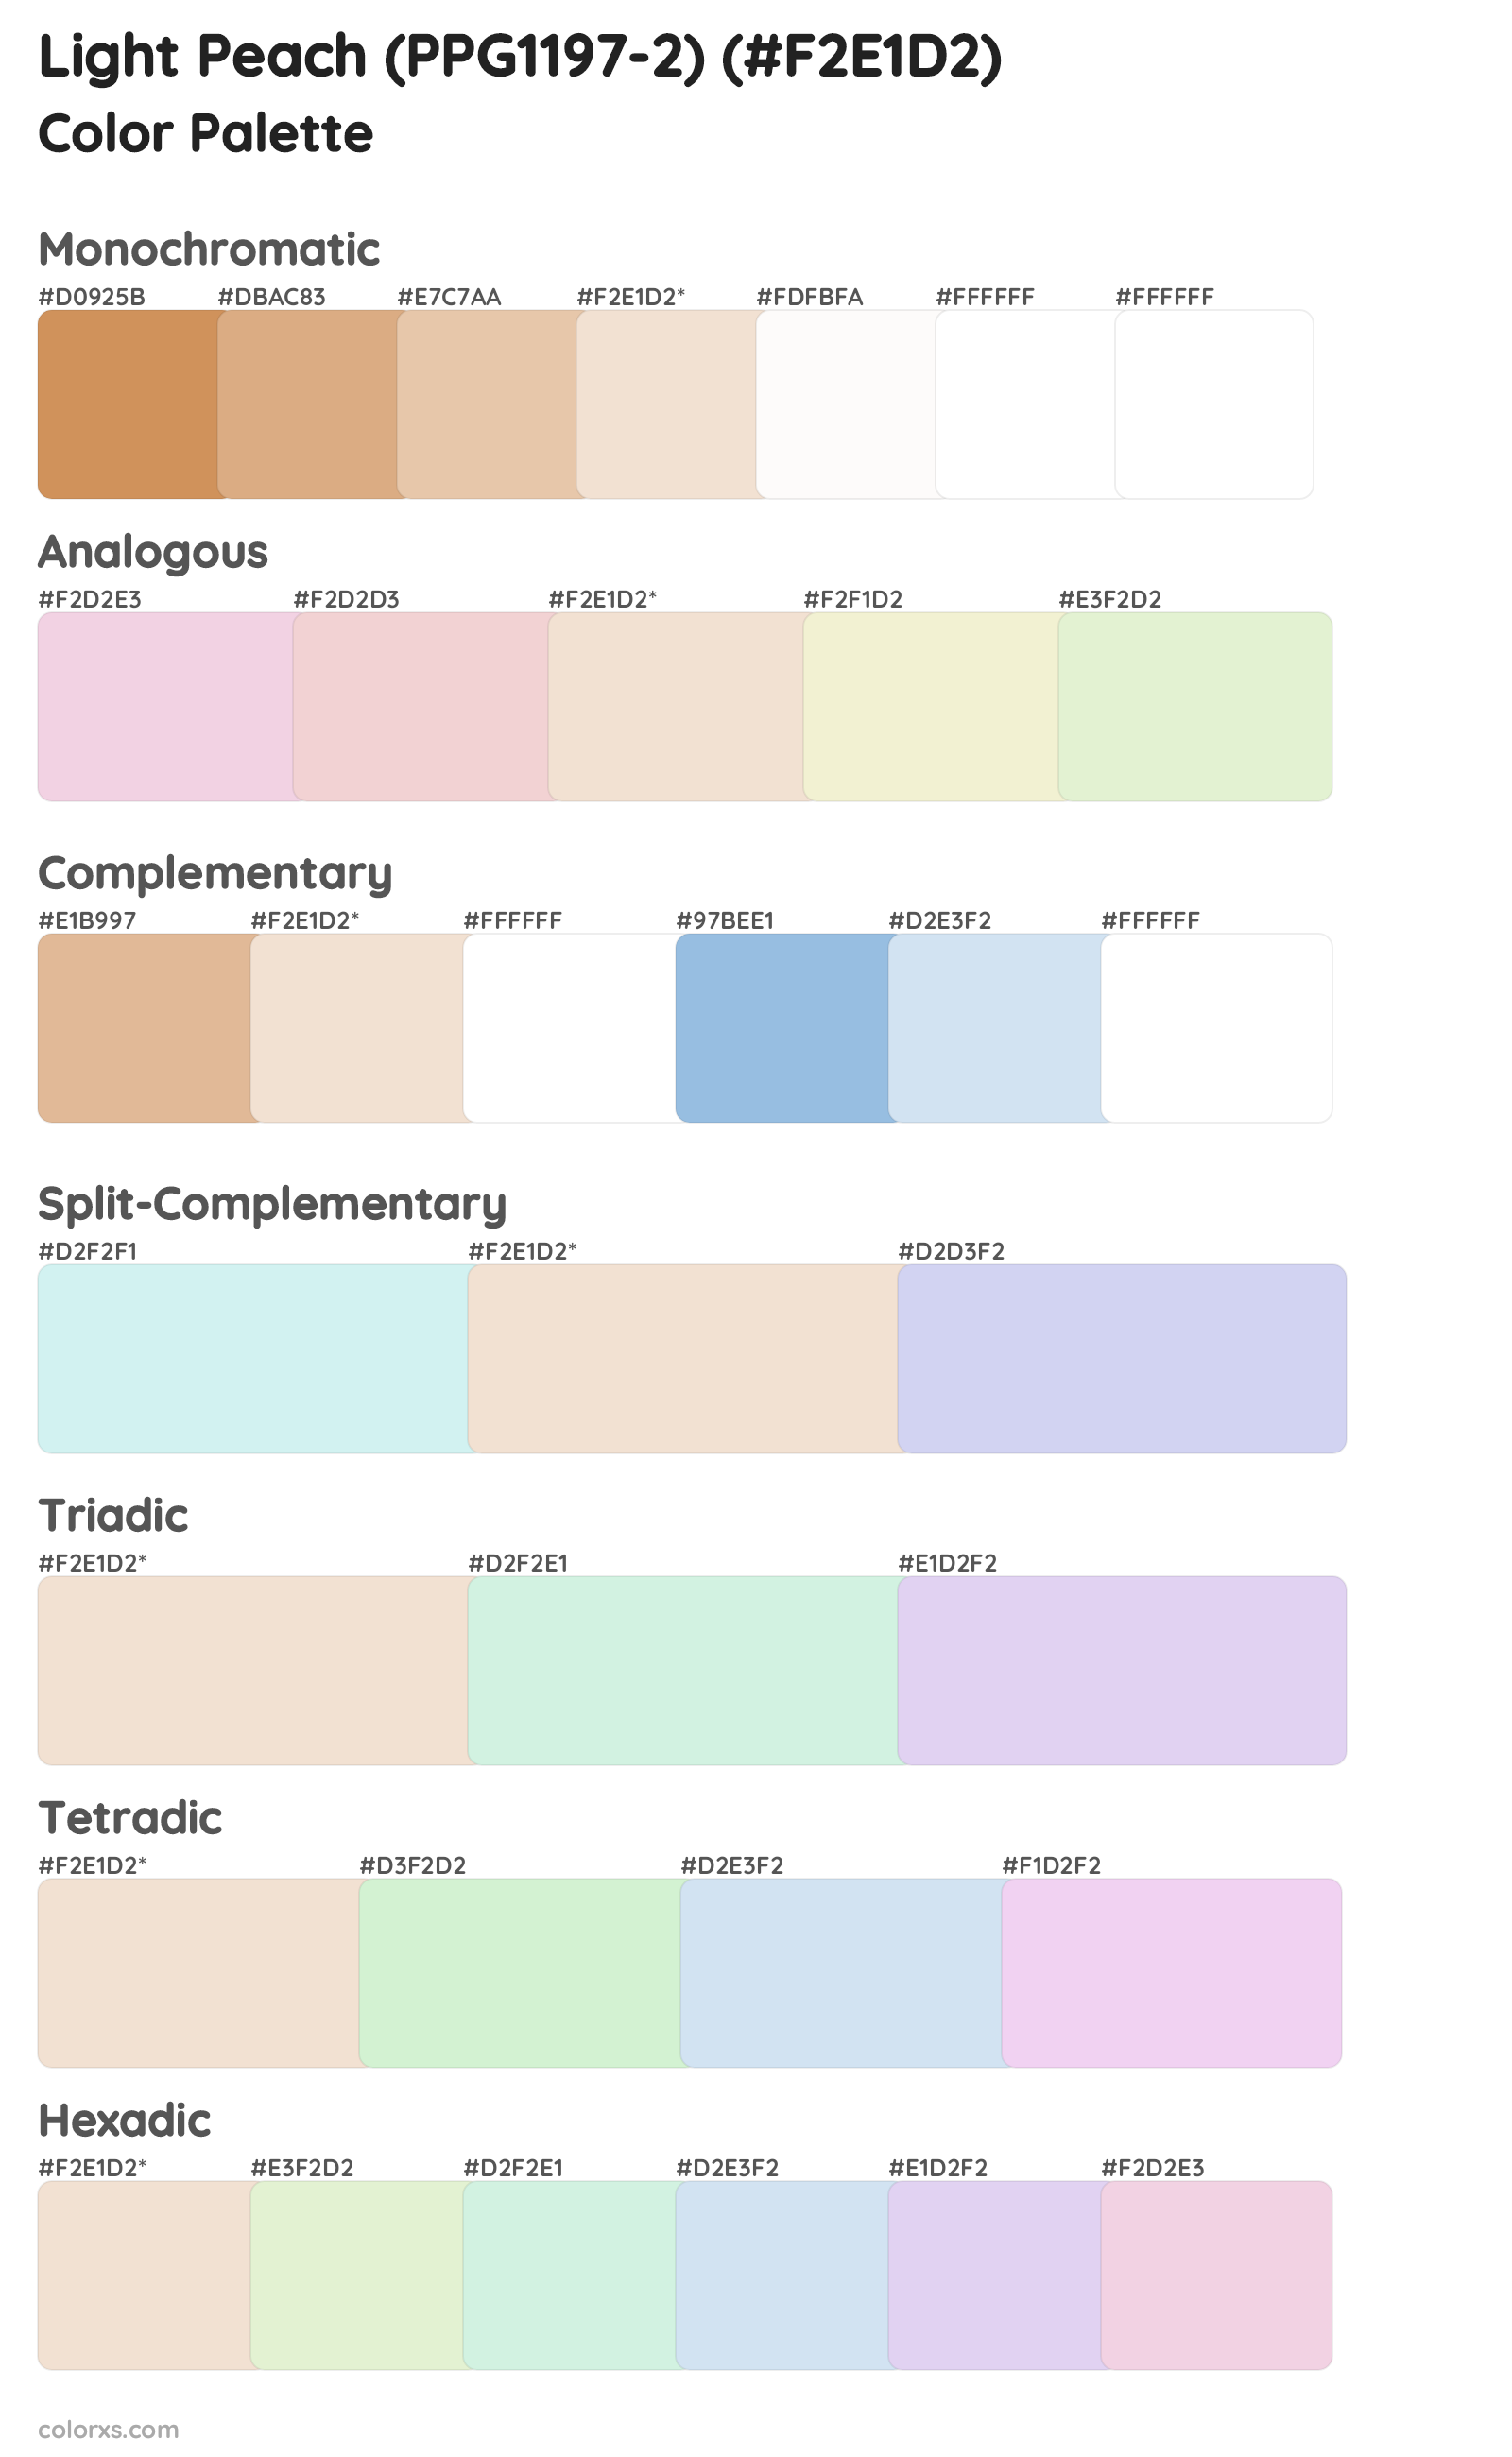 Light Peach (PPG1197-2) Color Scheme Palettes